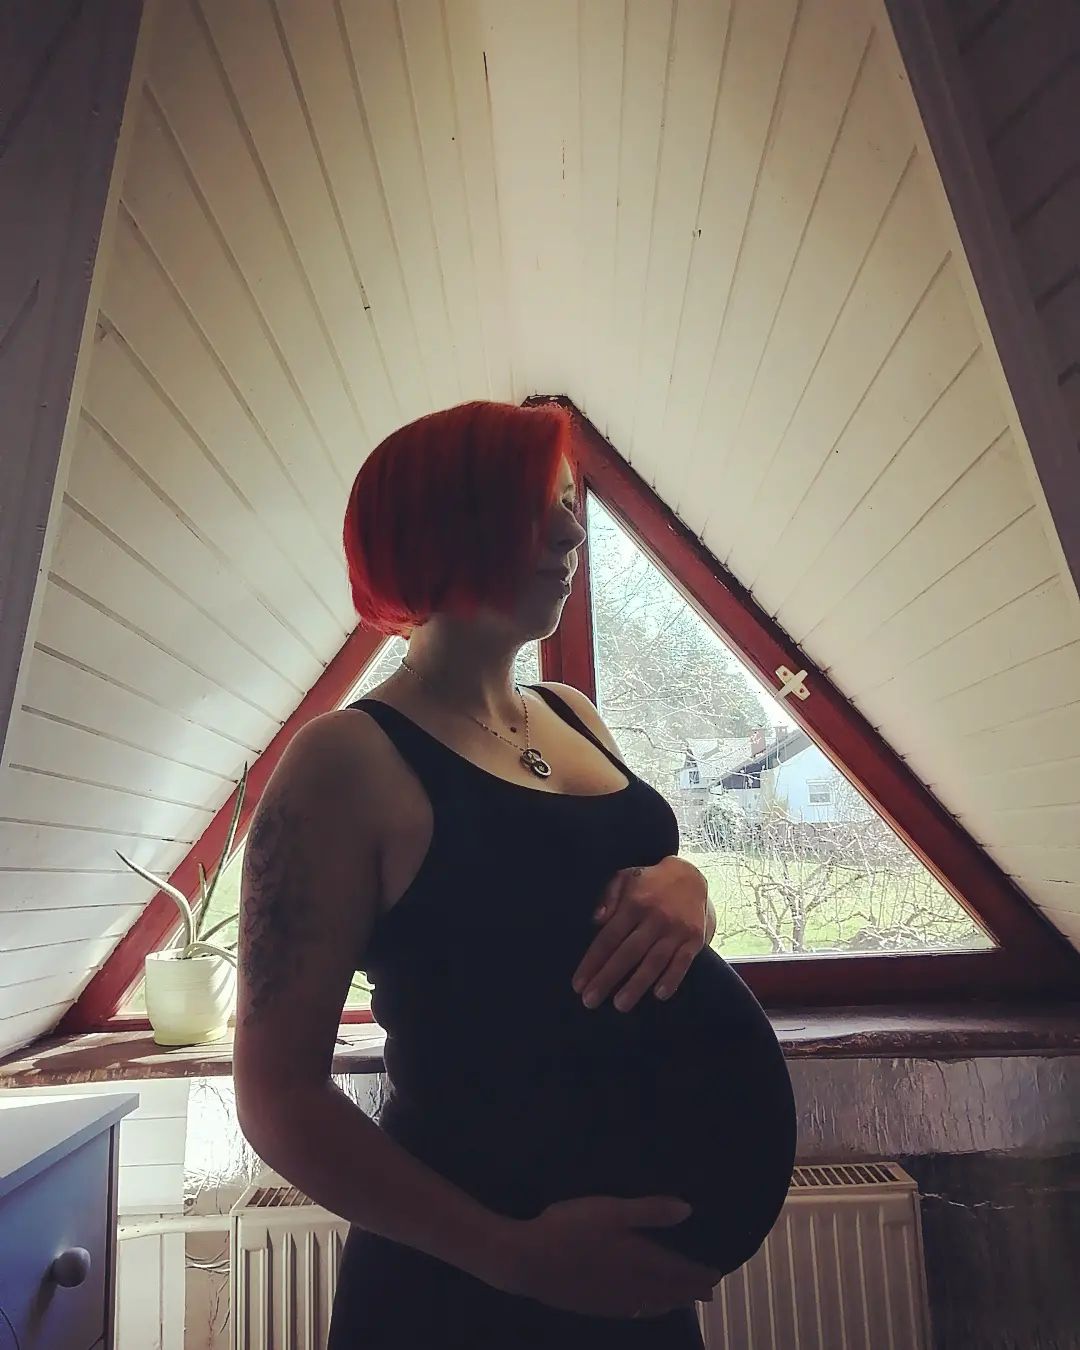 Mihaela je v zadnjem mesecu nosečnosti. Vir: Instagram